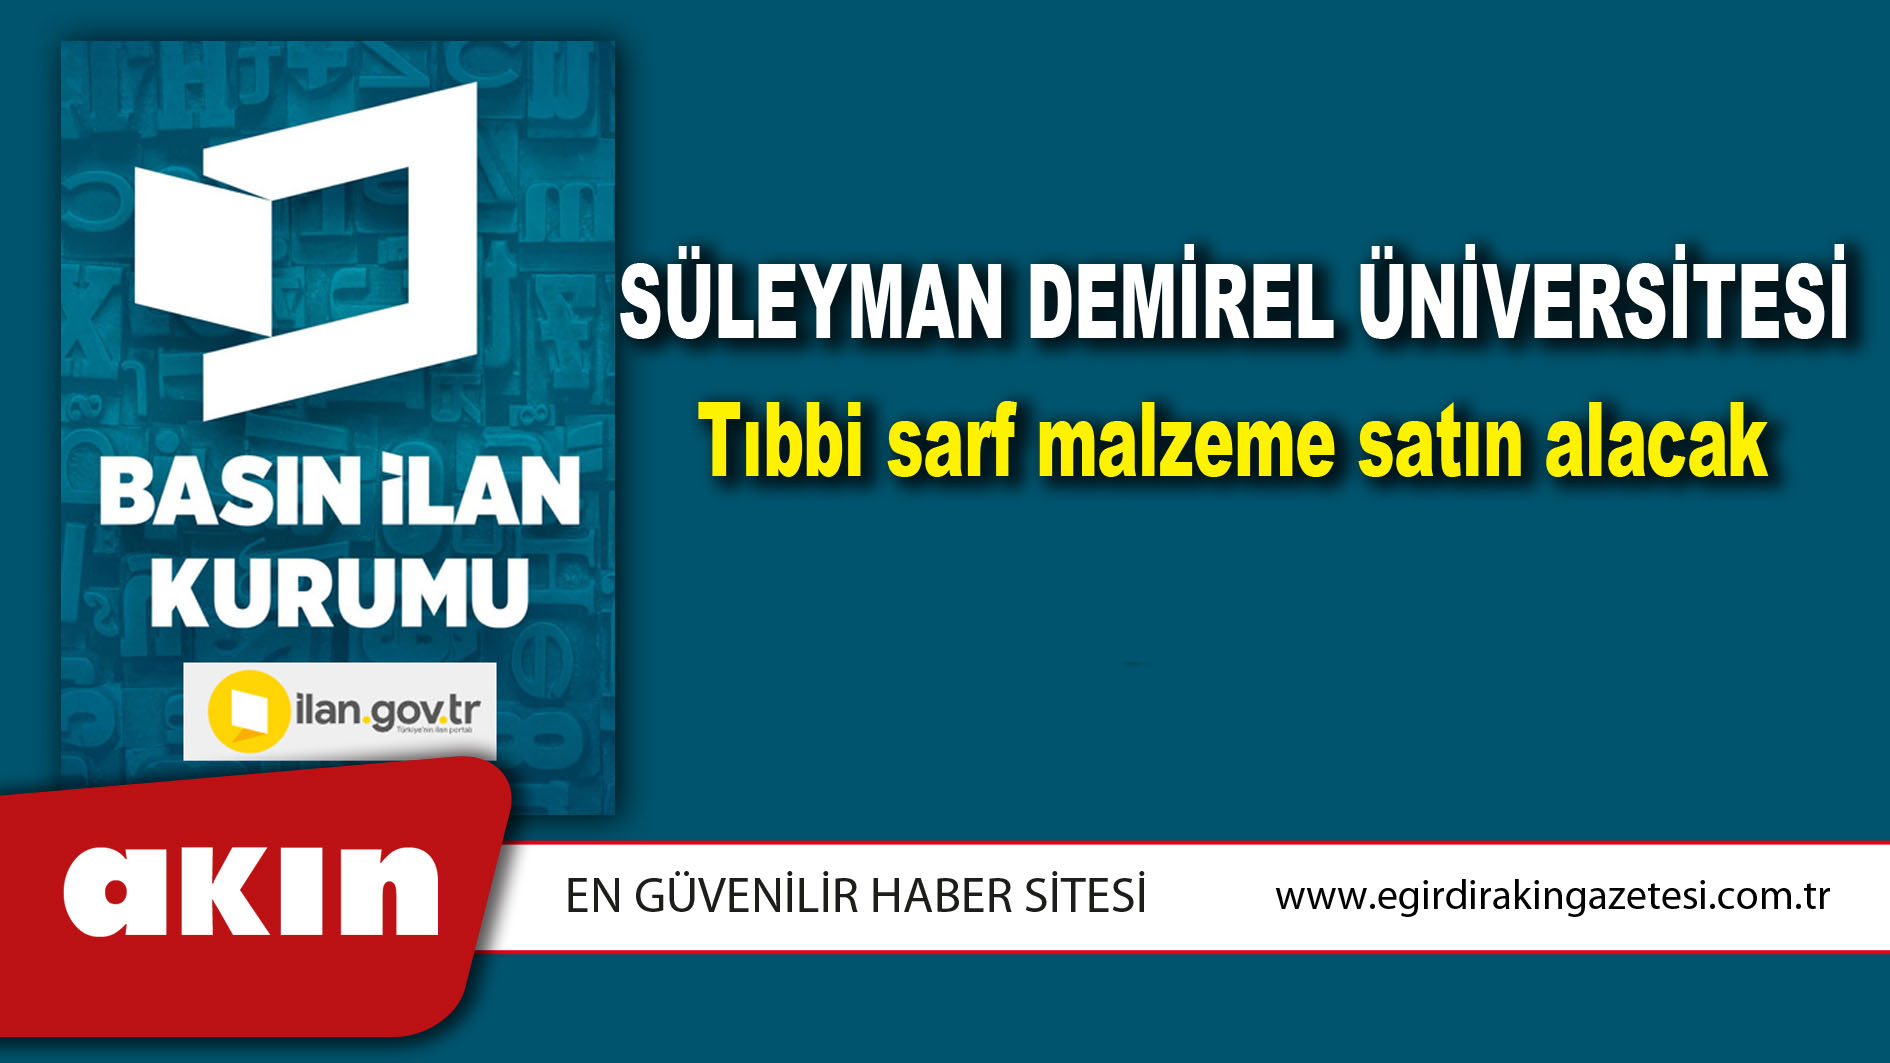 Süleyman Demirel Üniversitesi Tıbbi sarf malzeme satın alacak